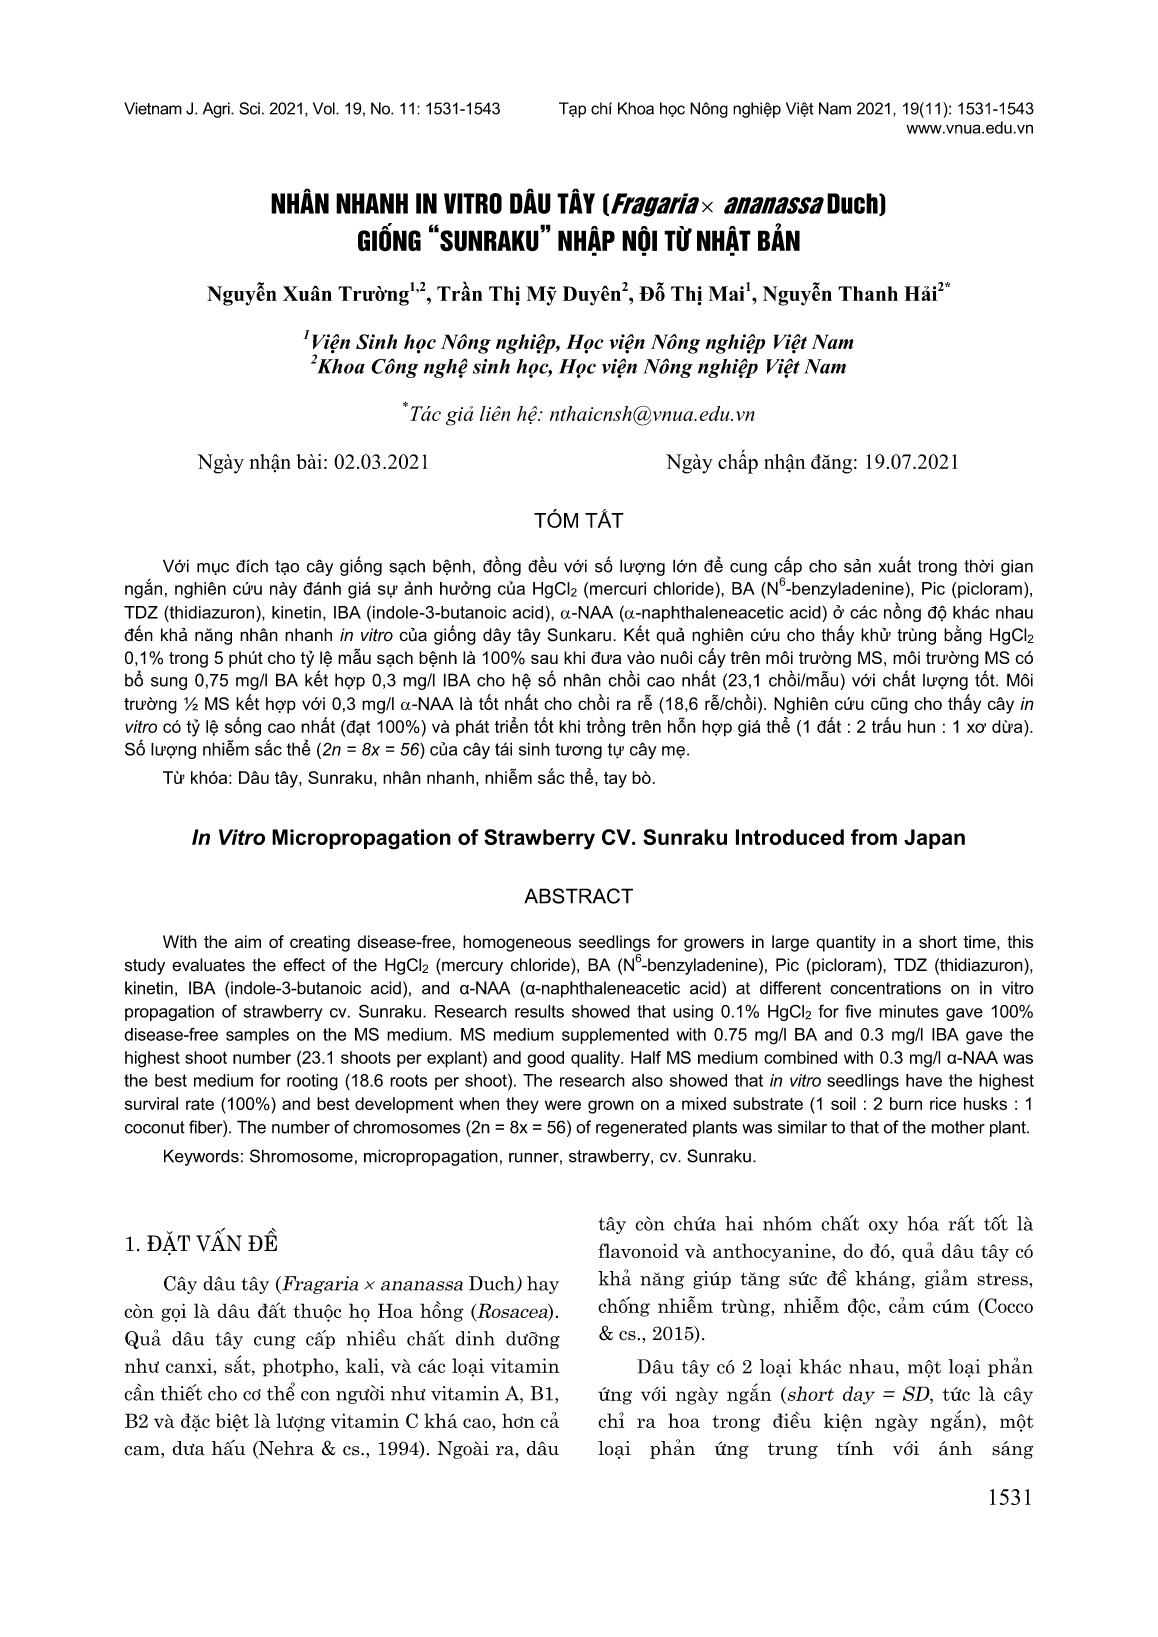 Nhân nhanh in vitro dâu tây (Fragaria x Ananassa Duch) giống “Sunraku” nhập nội từ Nhật Bản trang 1